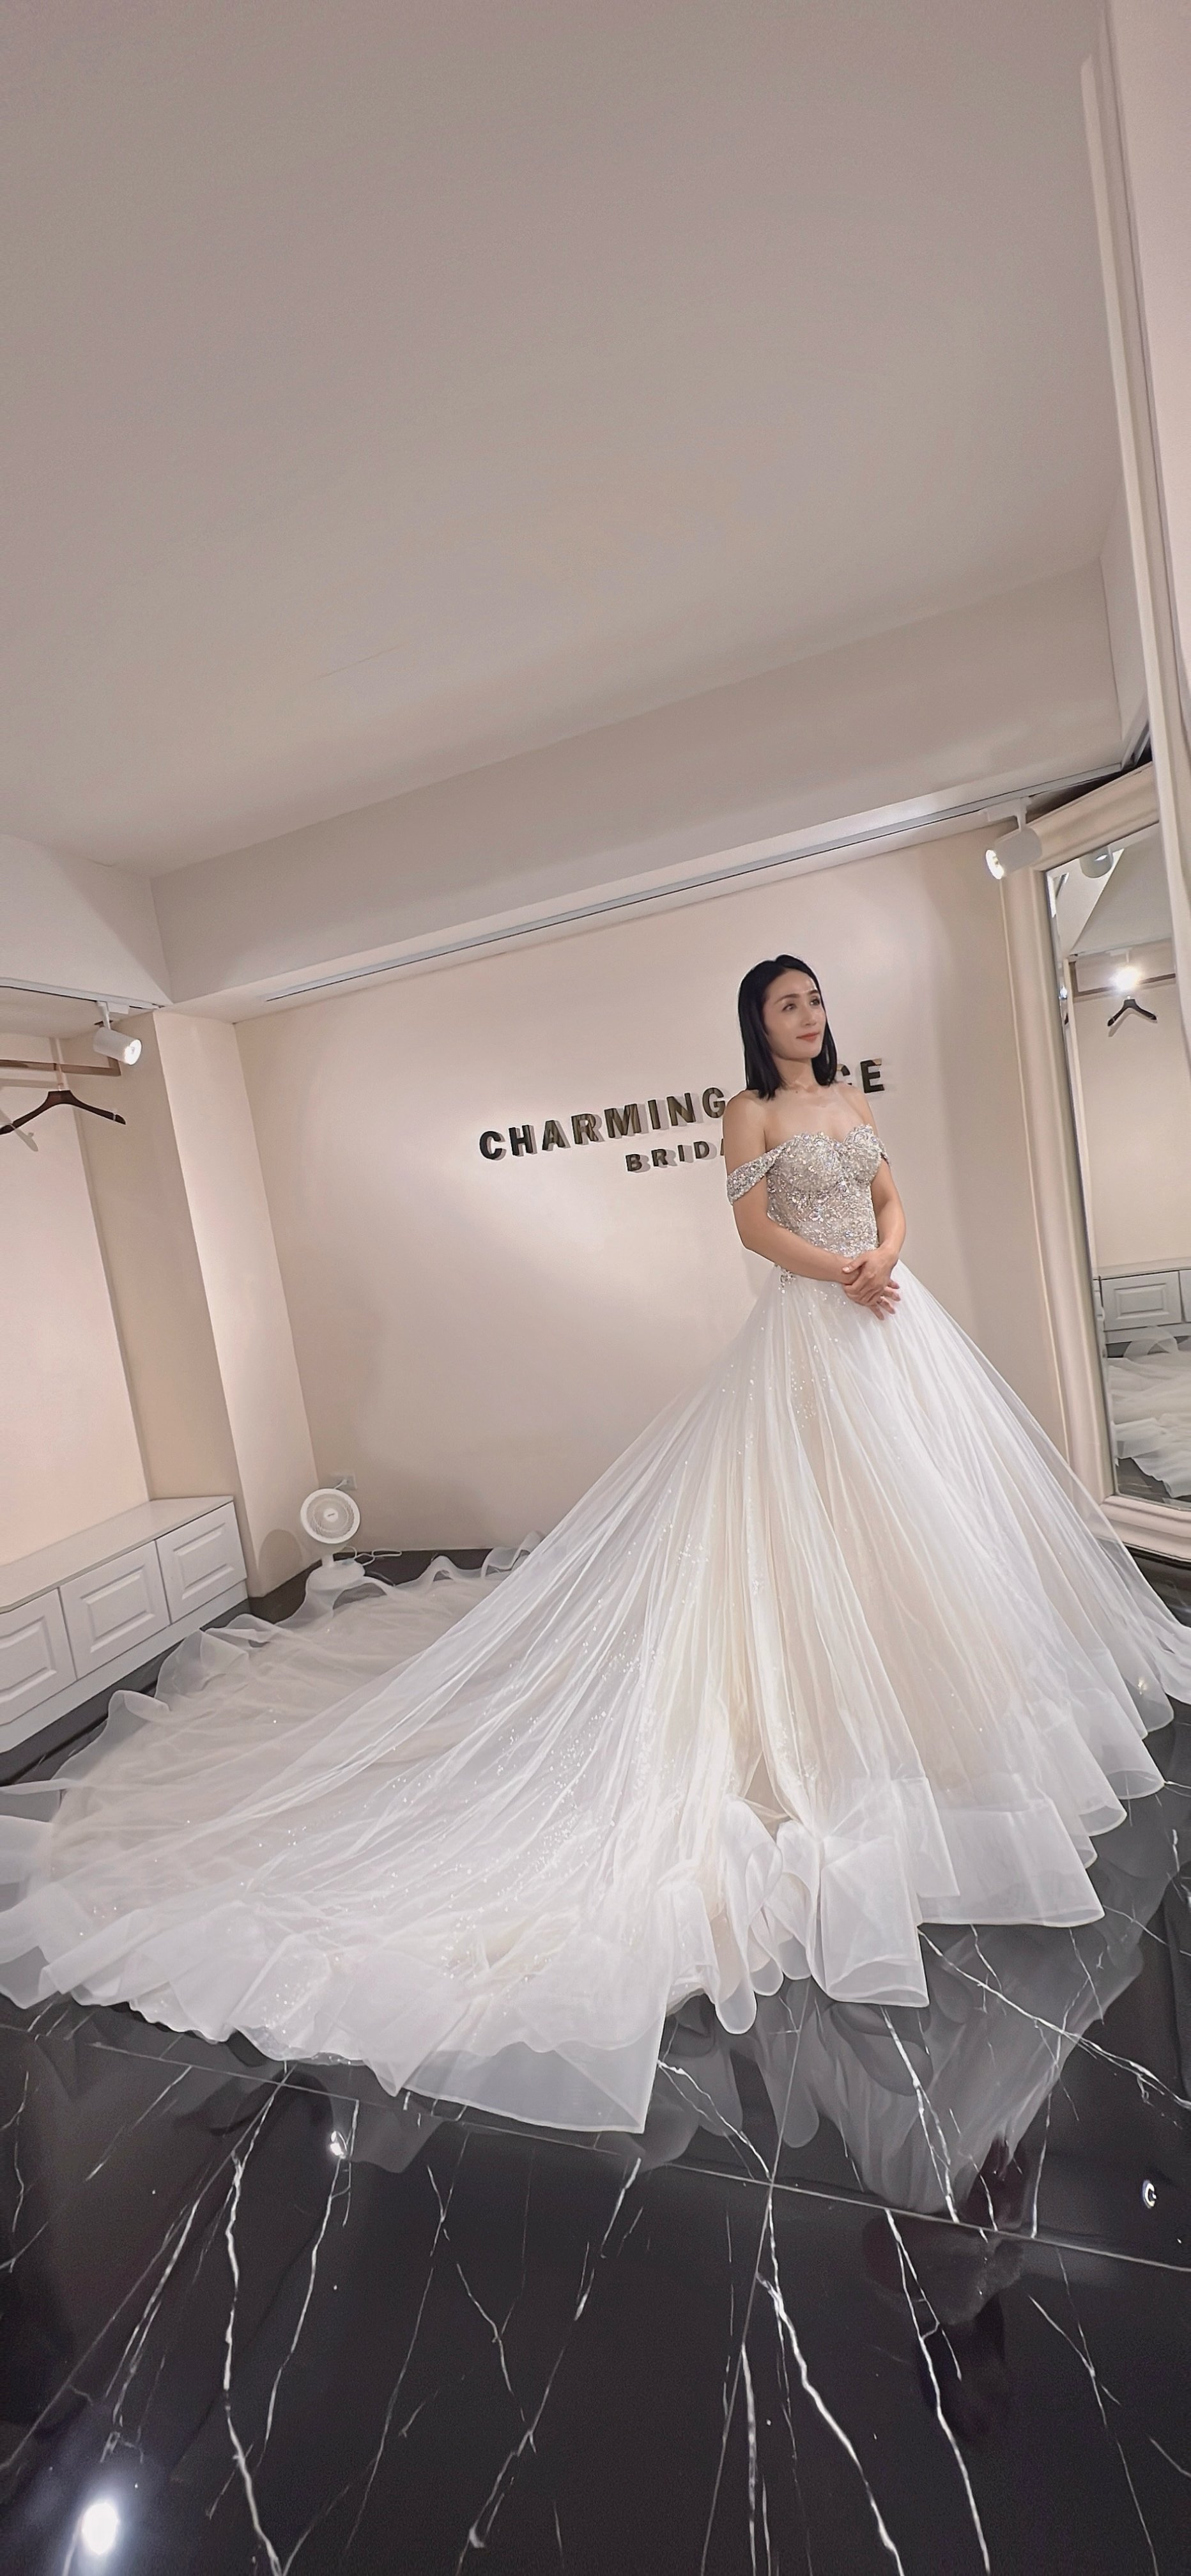 超美歐式婚紗店-Charming.Lace 迷人的手工訂製婚紗-婚禮廠商評價